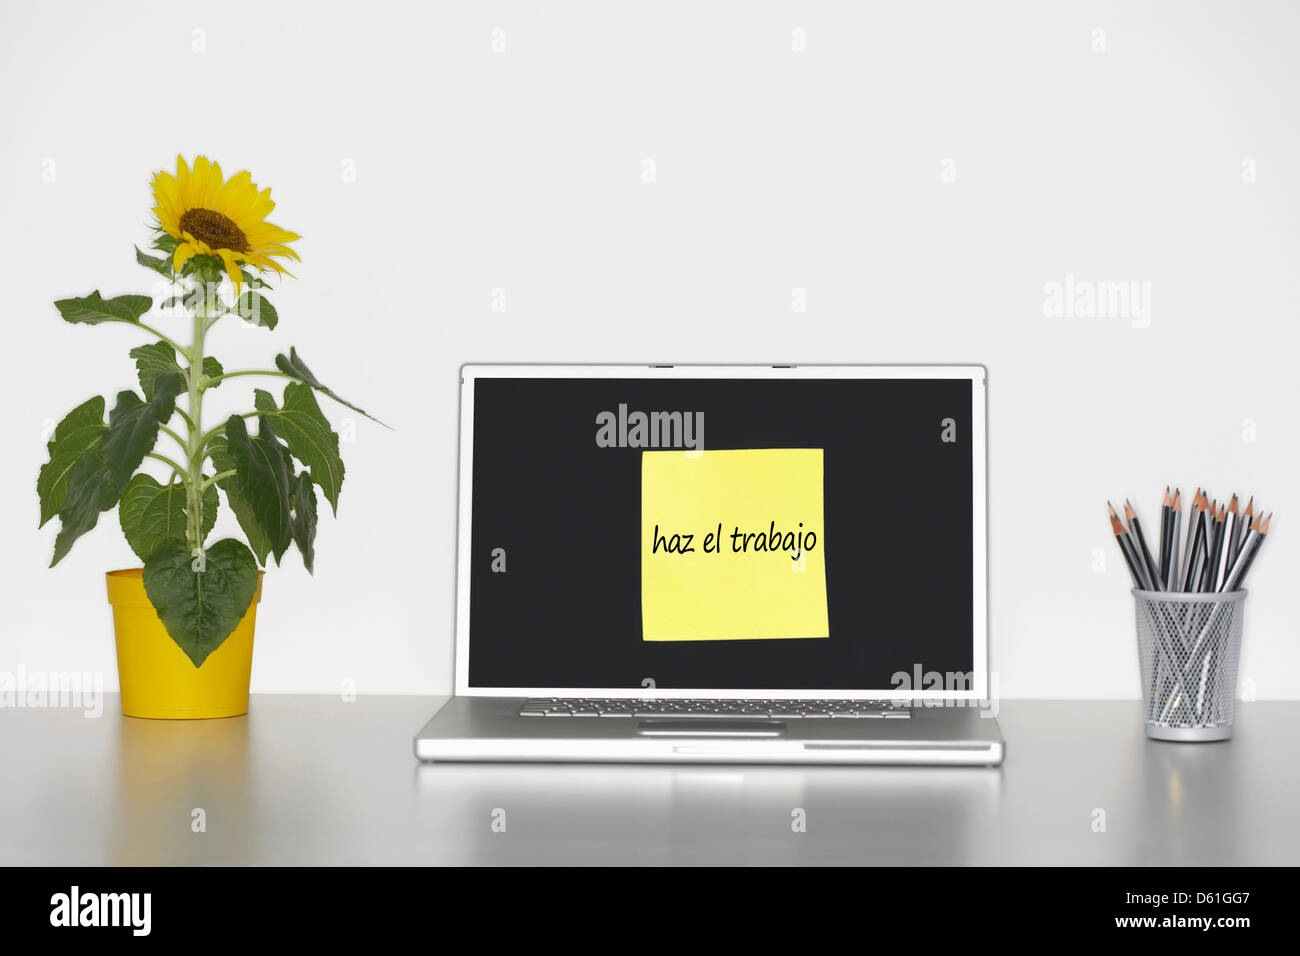 Sonnenblumen Pflanze Schreibtisch klebrig Briefpapier spanischen Text Laptopbildschirm sagen "Haz el Trabajo" (arbeiten) Stockfoto